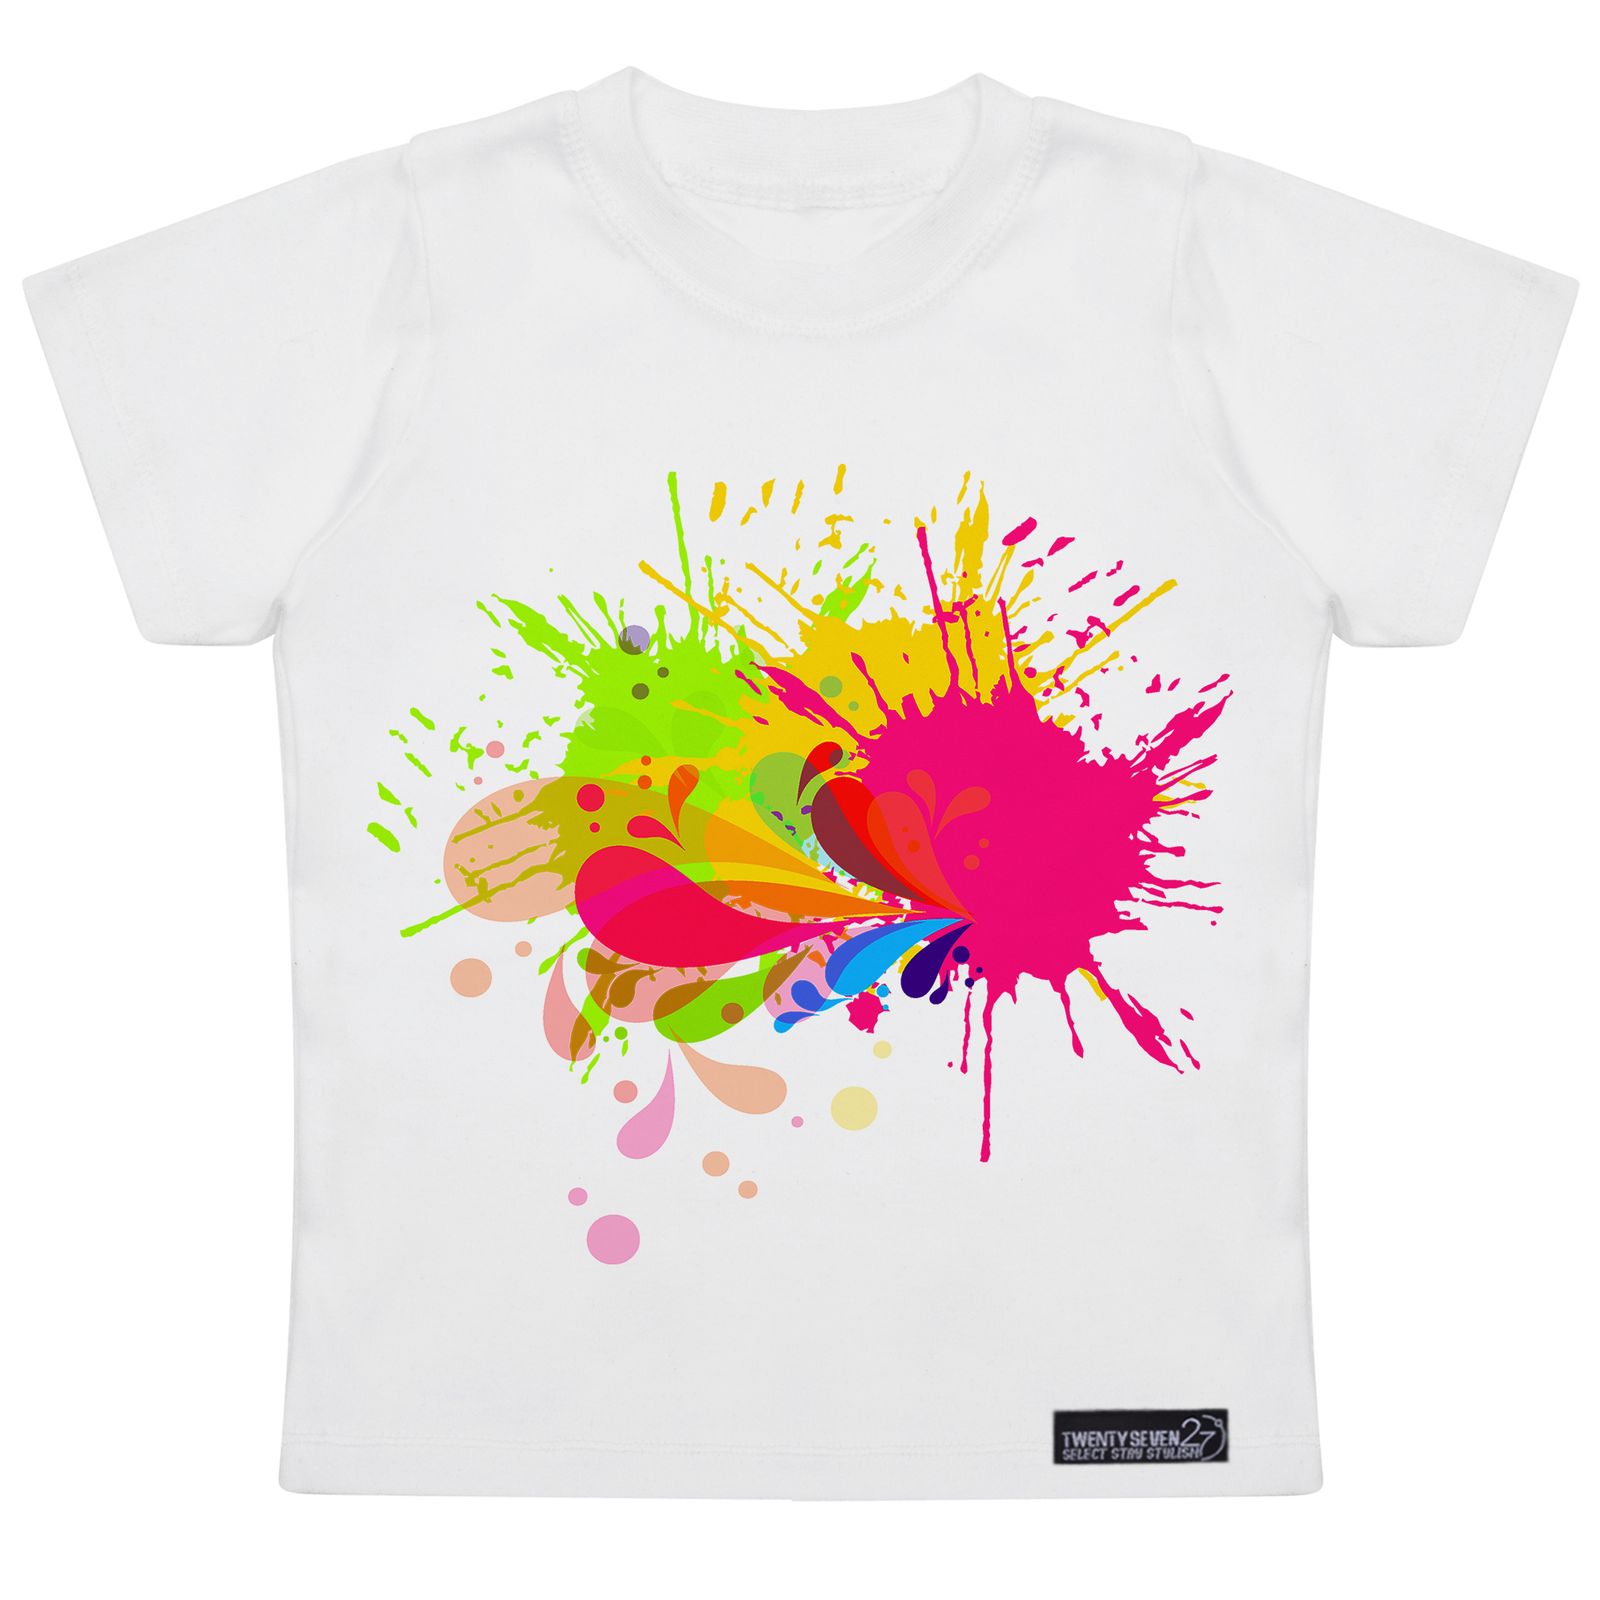 تی شرت آستین کوتاه پسرانه 27 مدل Brush Watercolor کد MH953 -  - 4